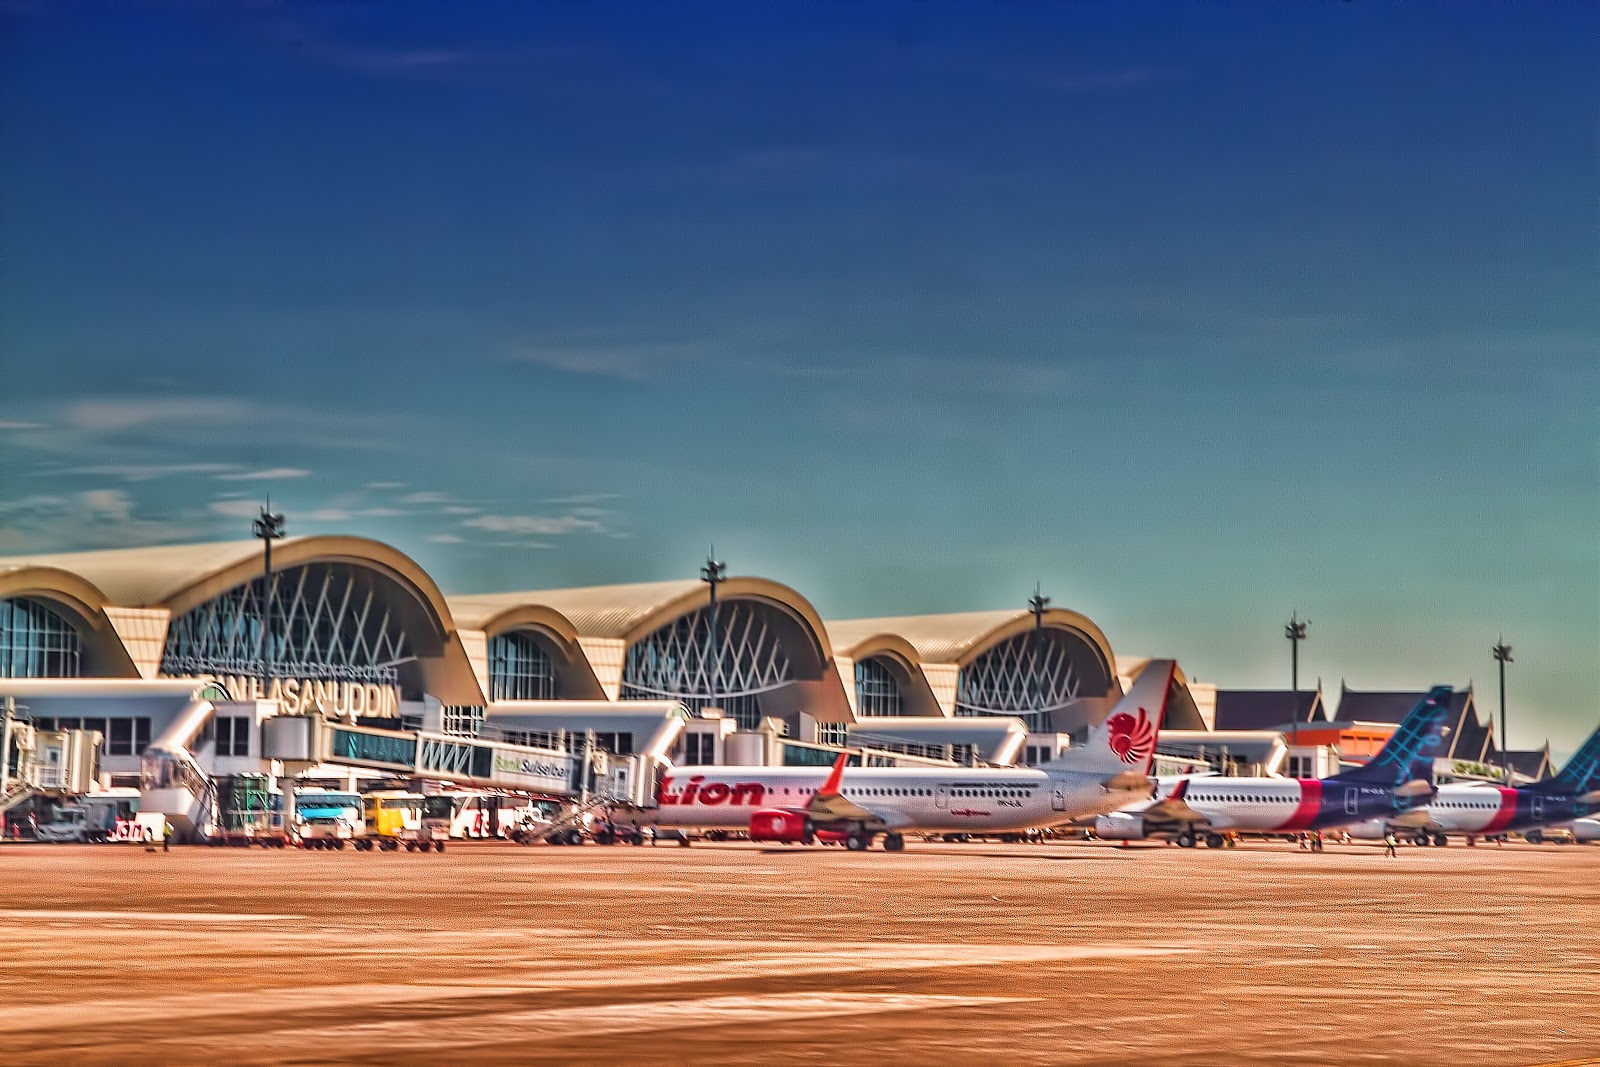 Bandara International Termegah yang ada di Indonesia